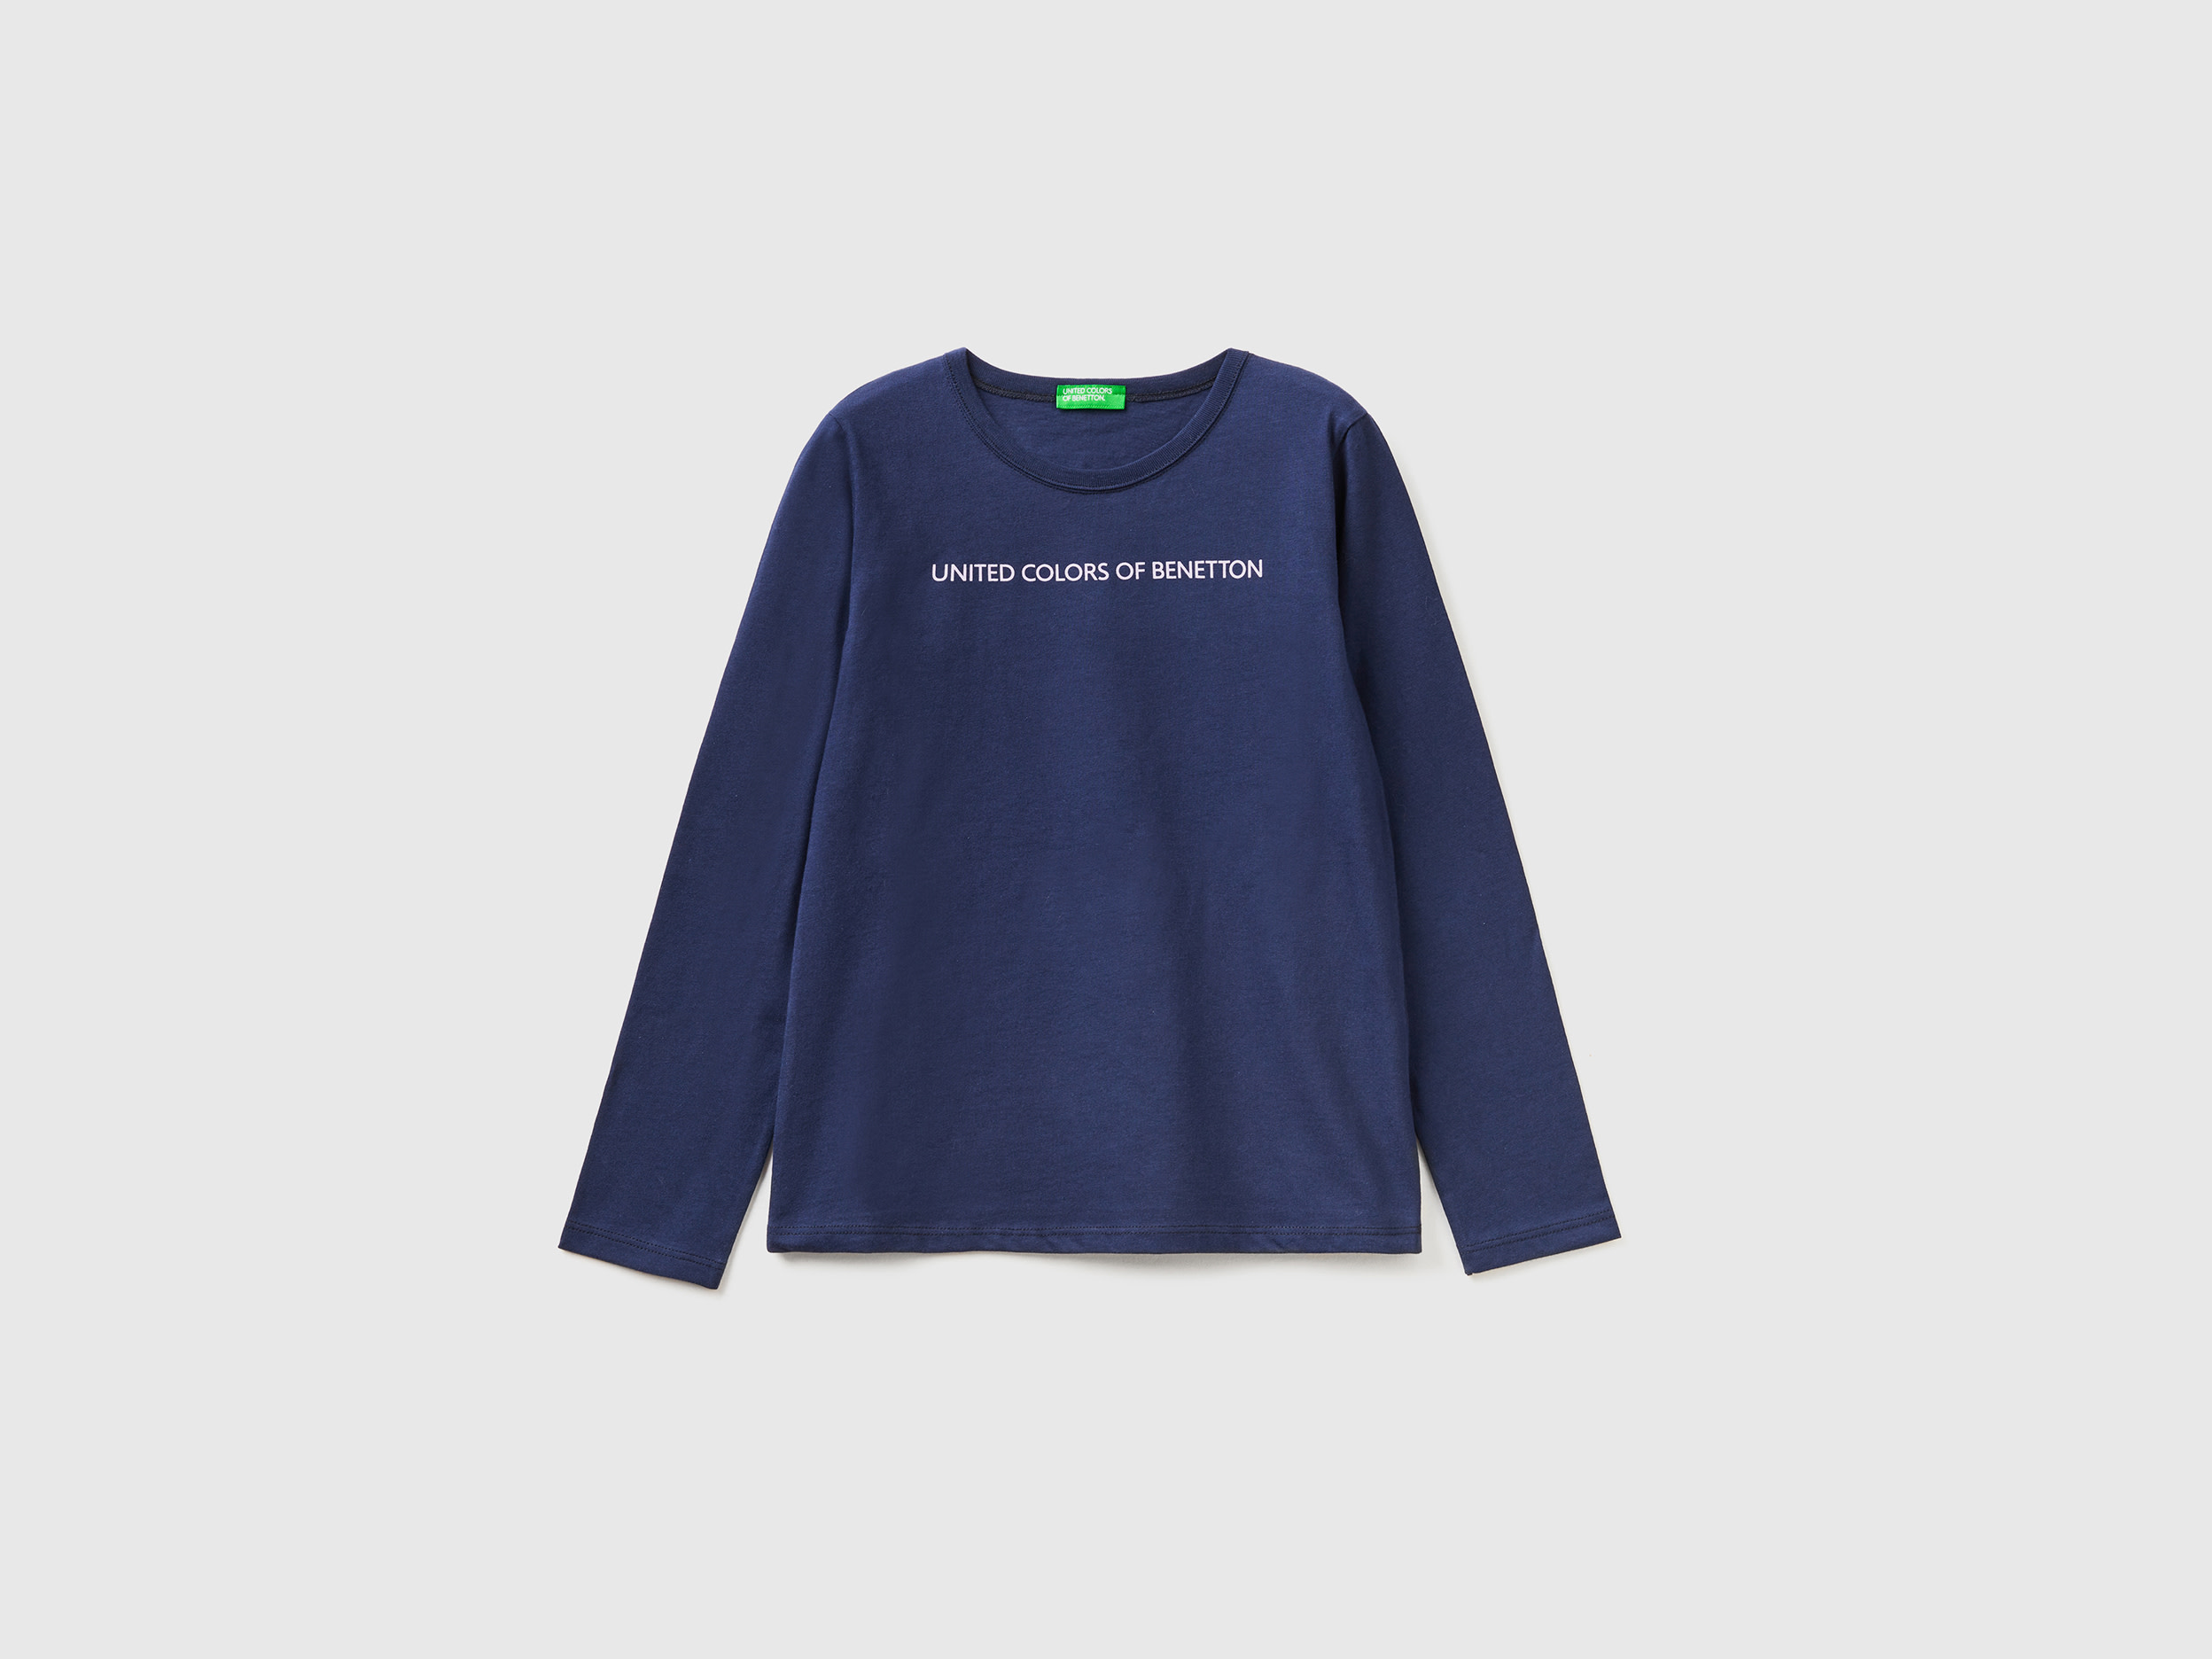 Benetton, Long Sleeve 100% Cotton T-shirt, size 2XL, Dark Blue, Kids